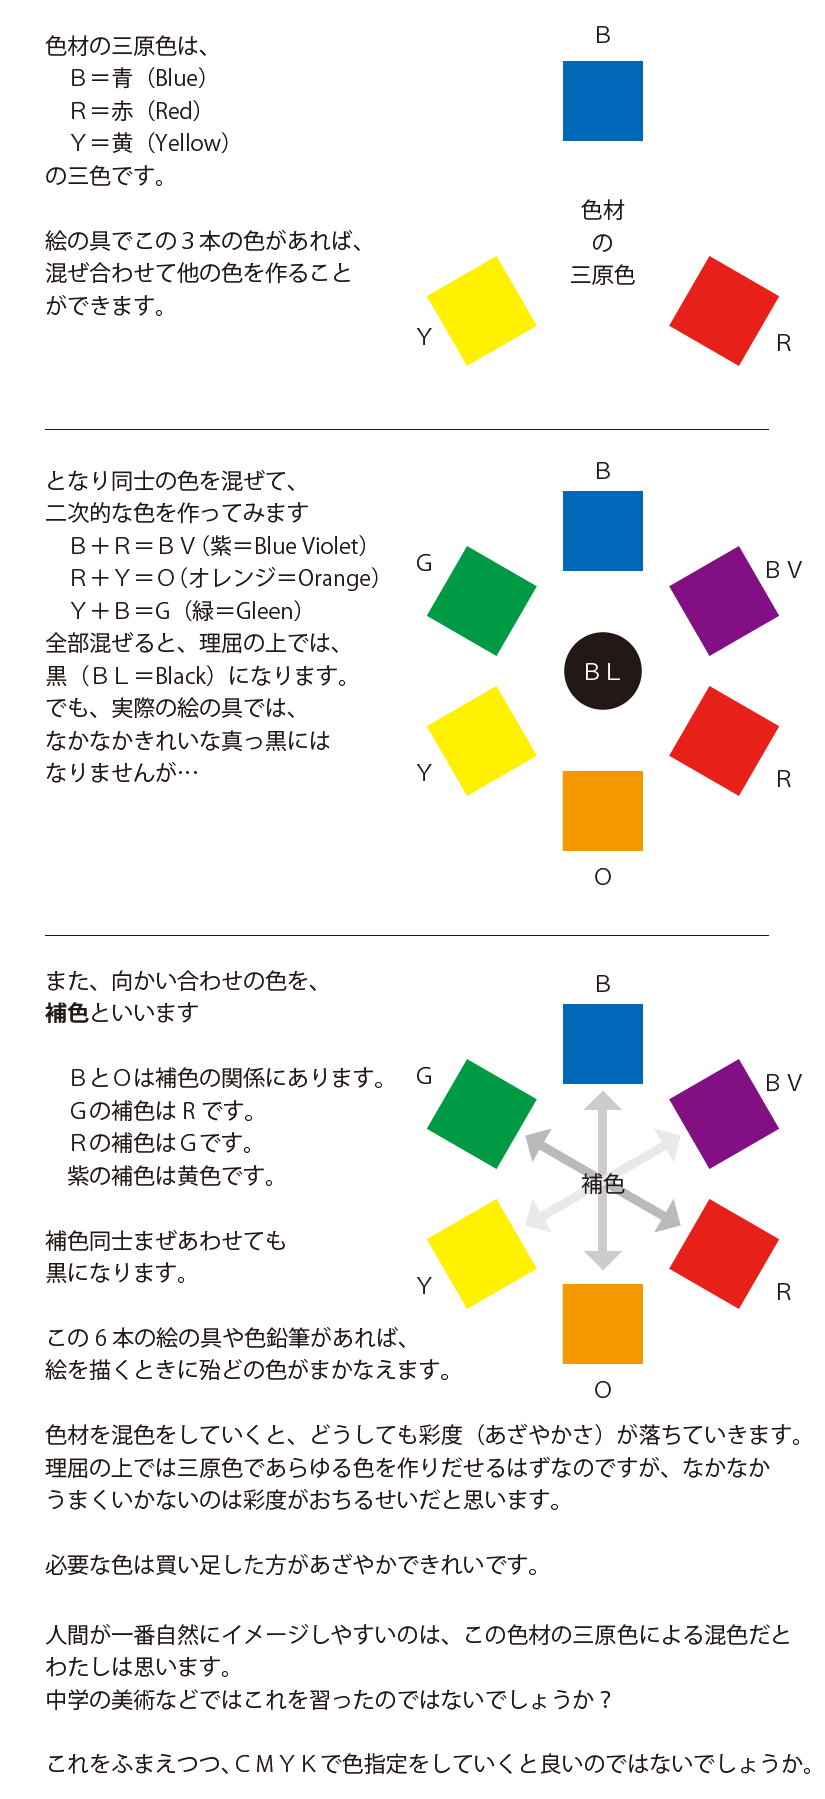 色材の三原色 印刷の三原色 光の三原色 色に関する基本中の基本 えまノート